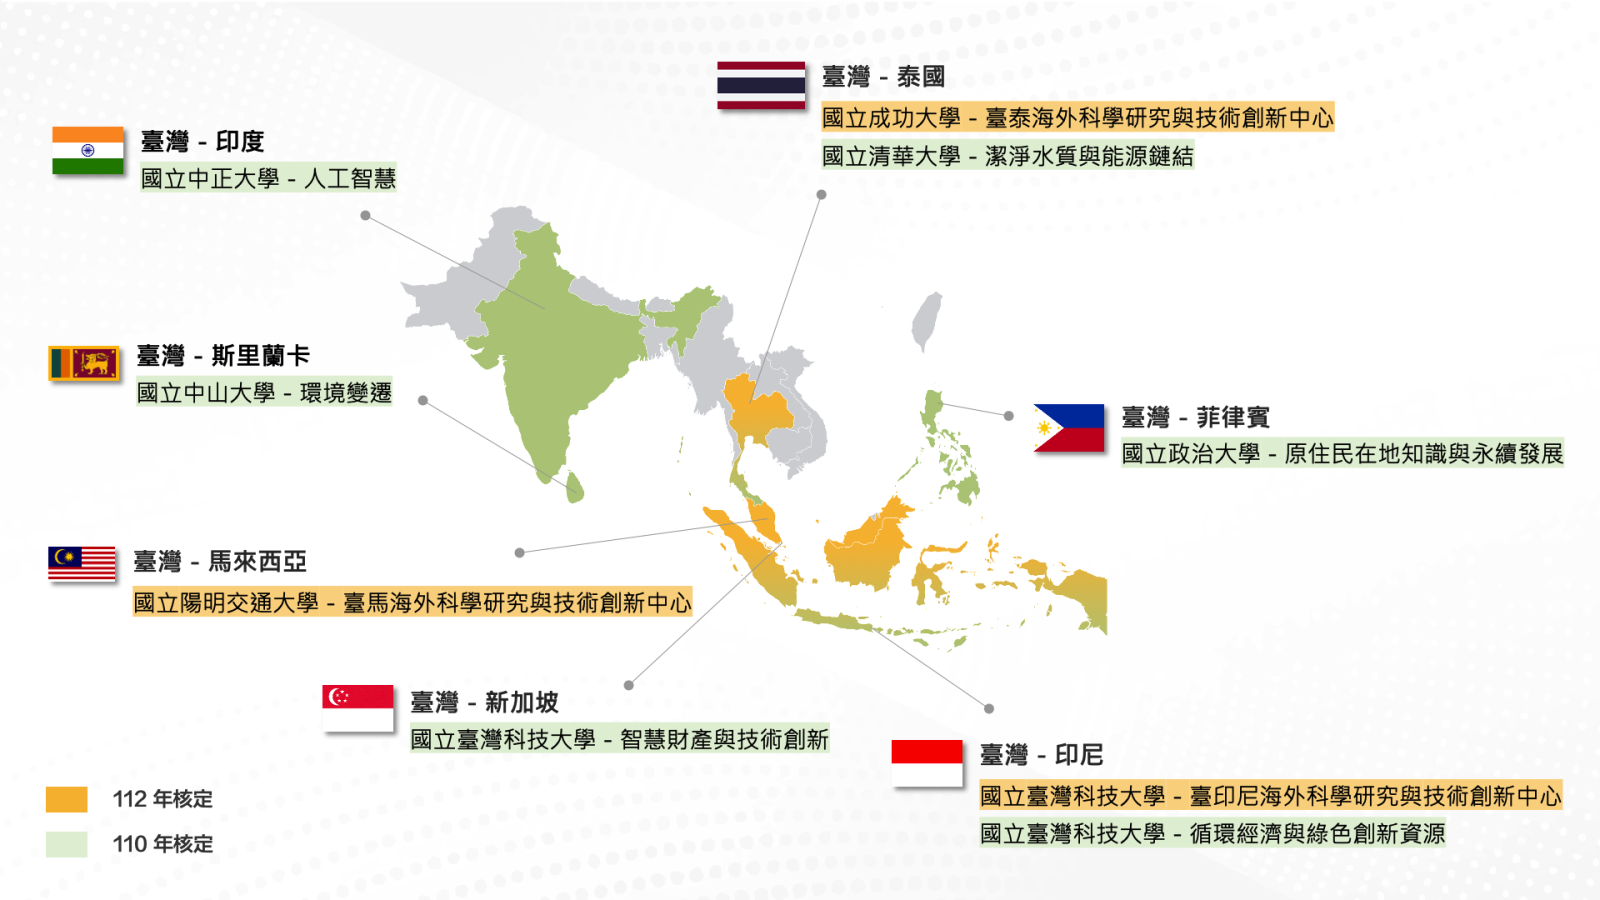 臺灣與東南亞各個國家的合作海外科學研究與技術創新中心列表